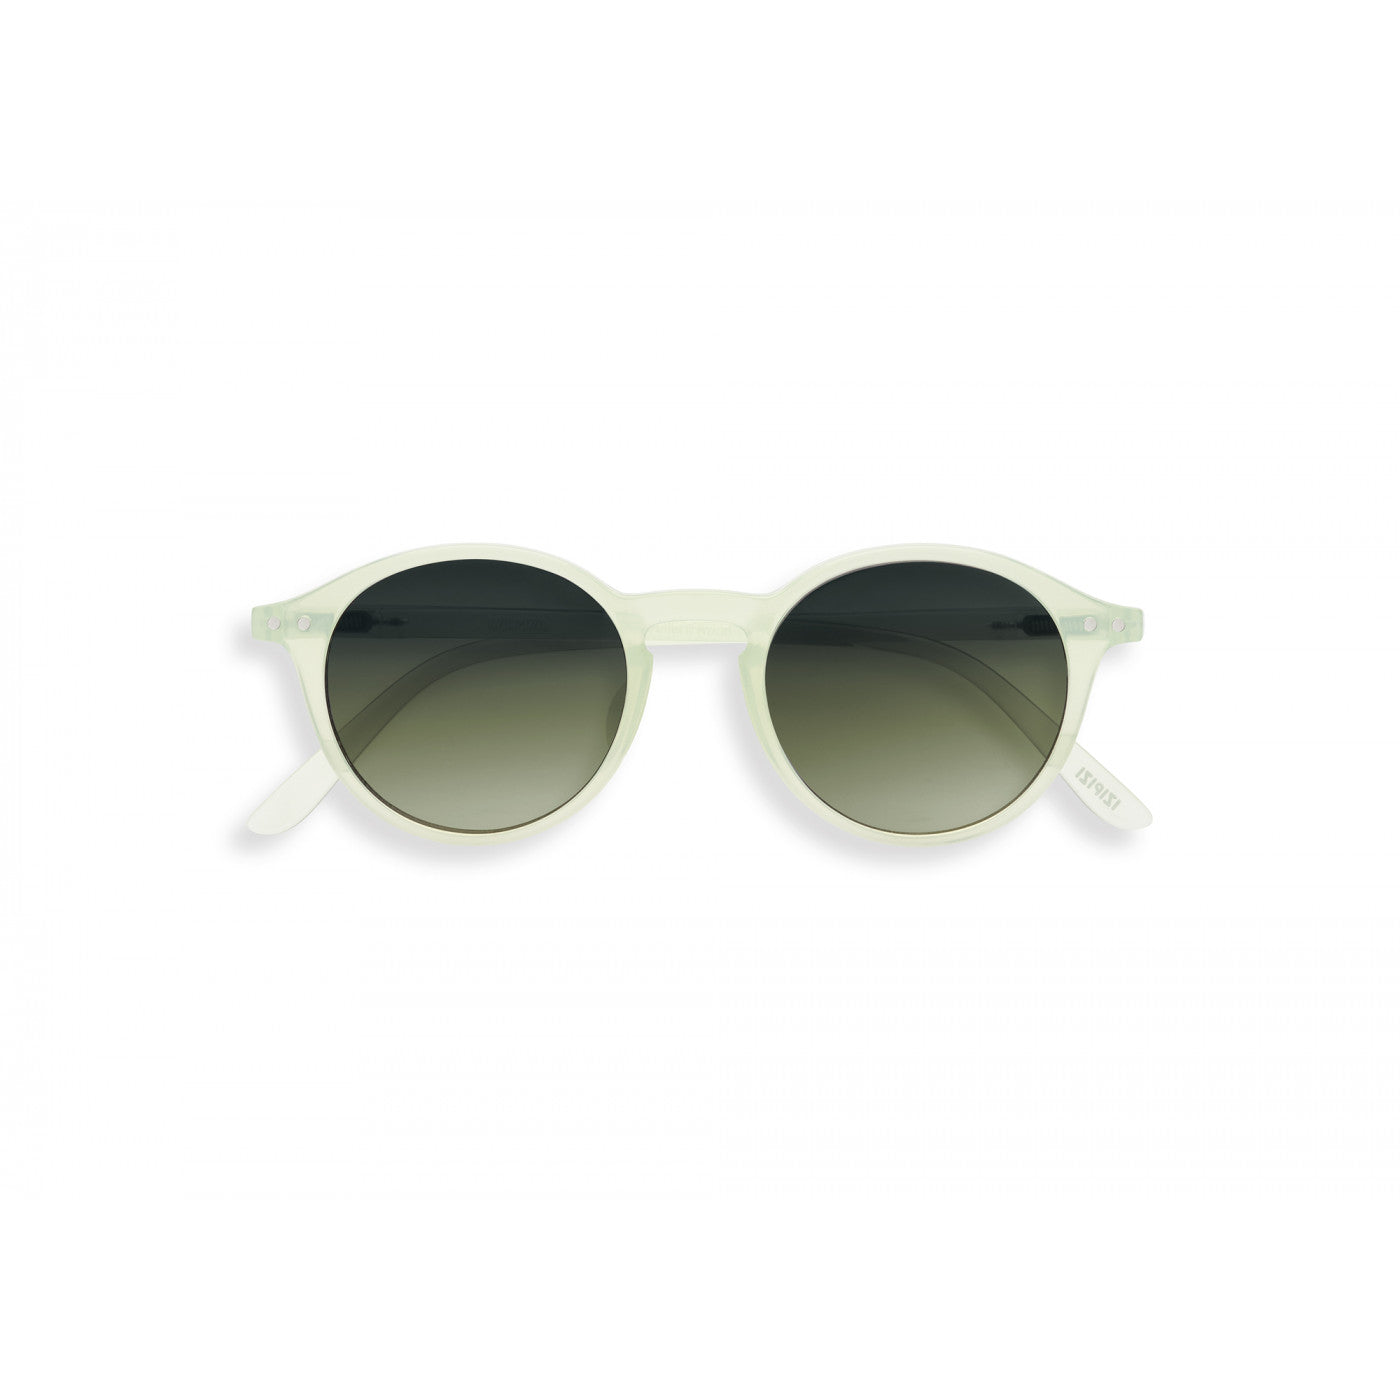 Sunglasses  - #M Quiet Green